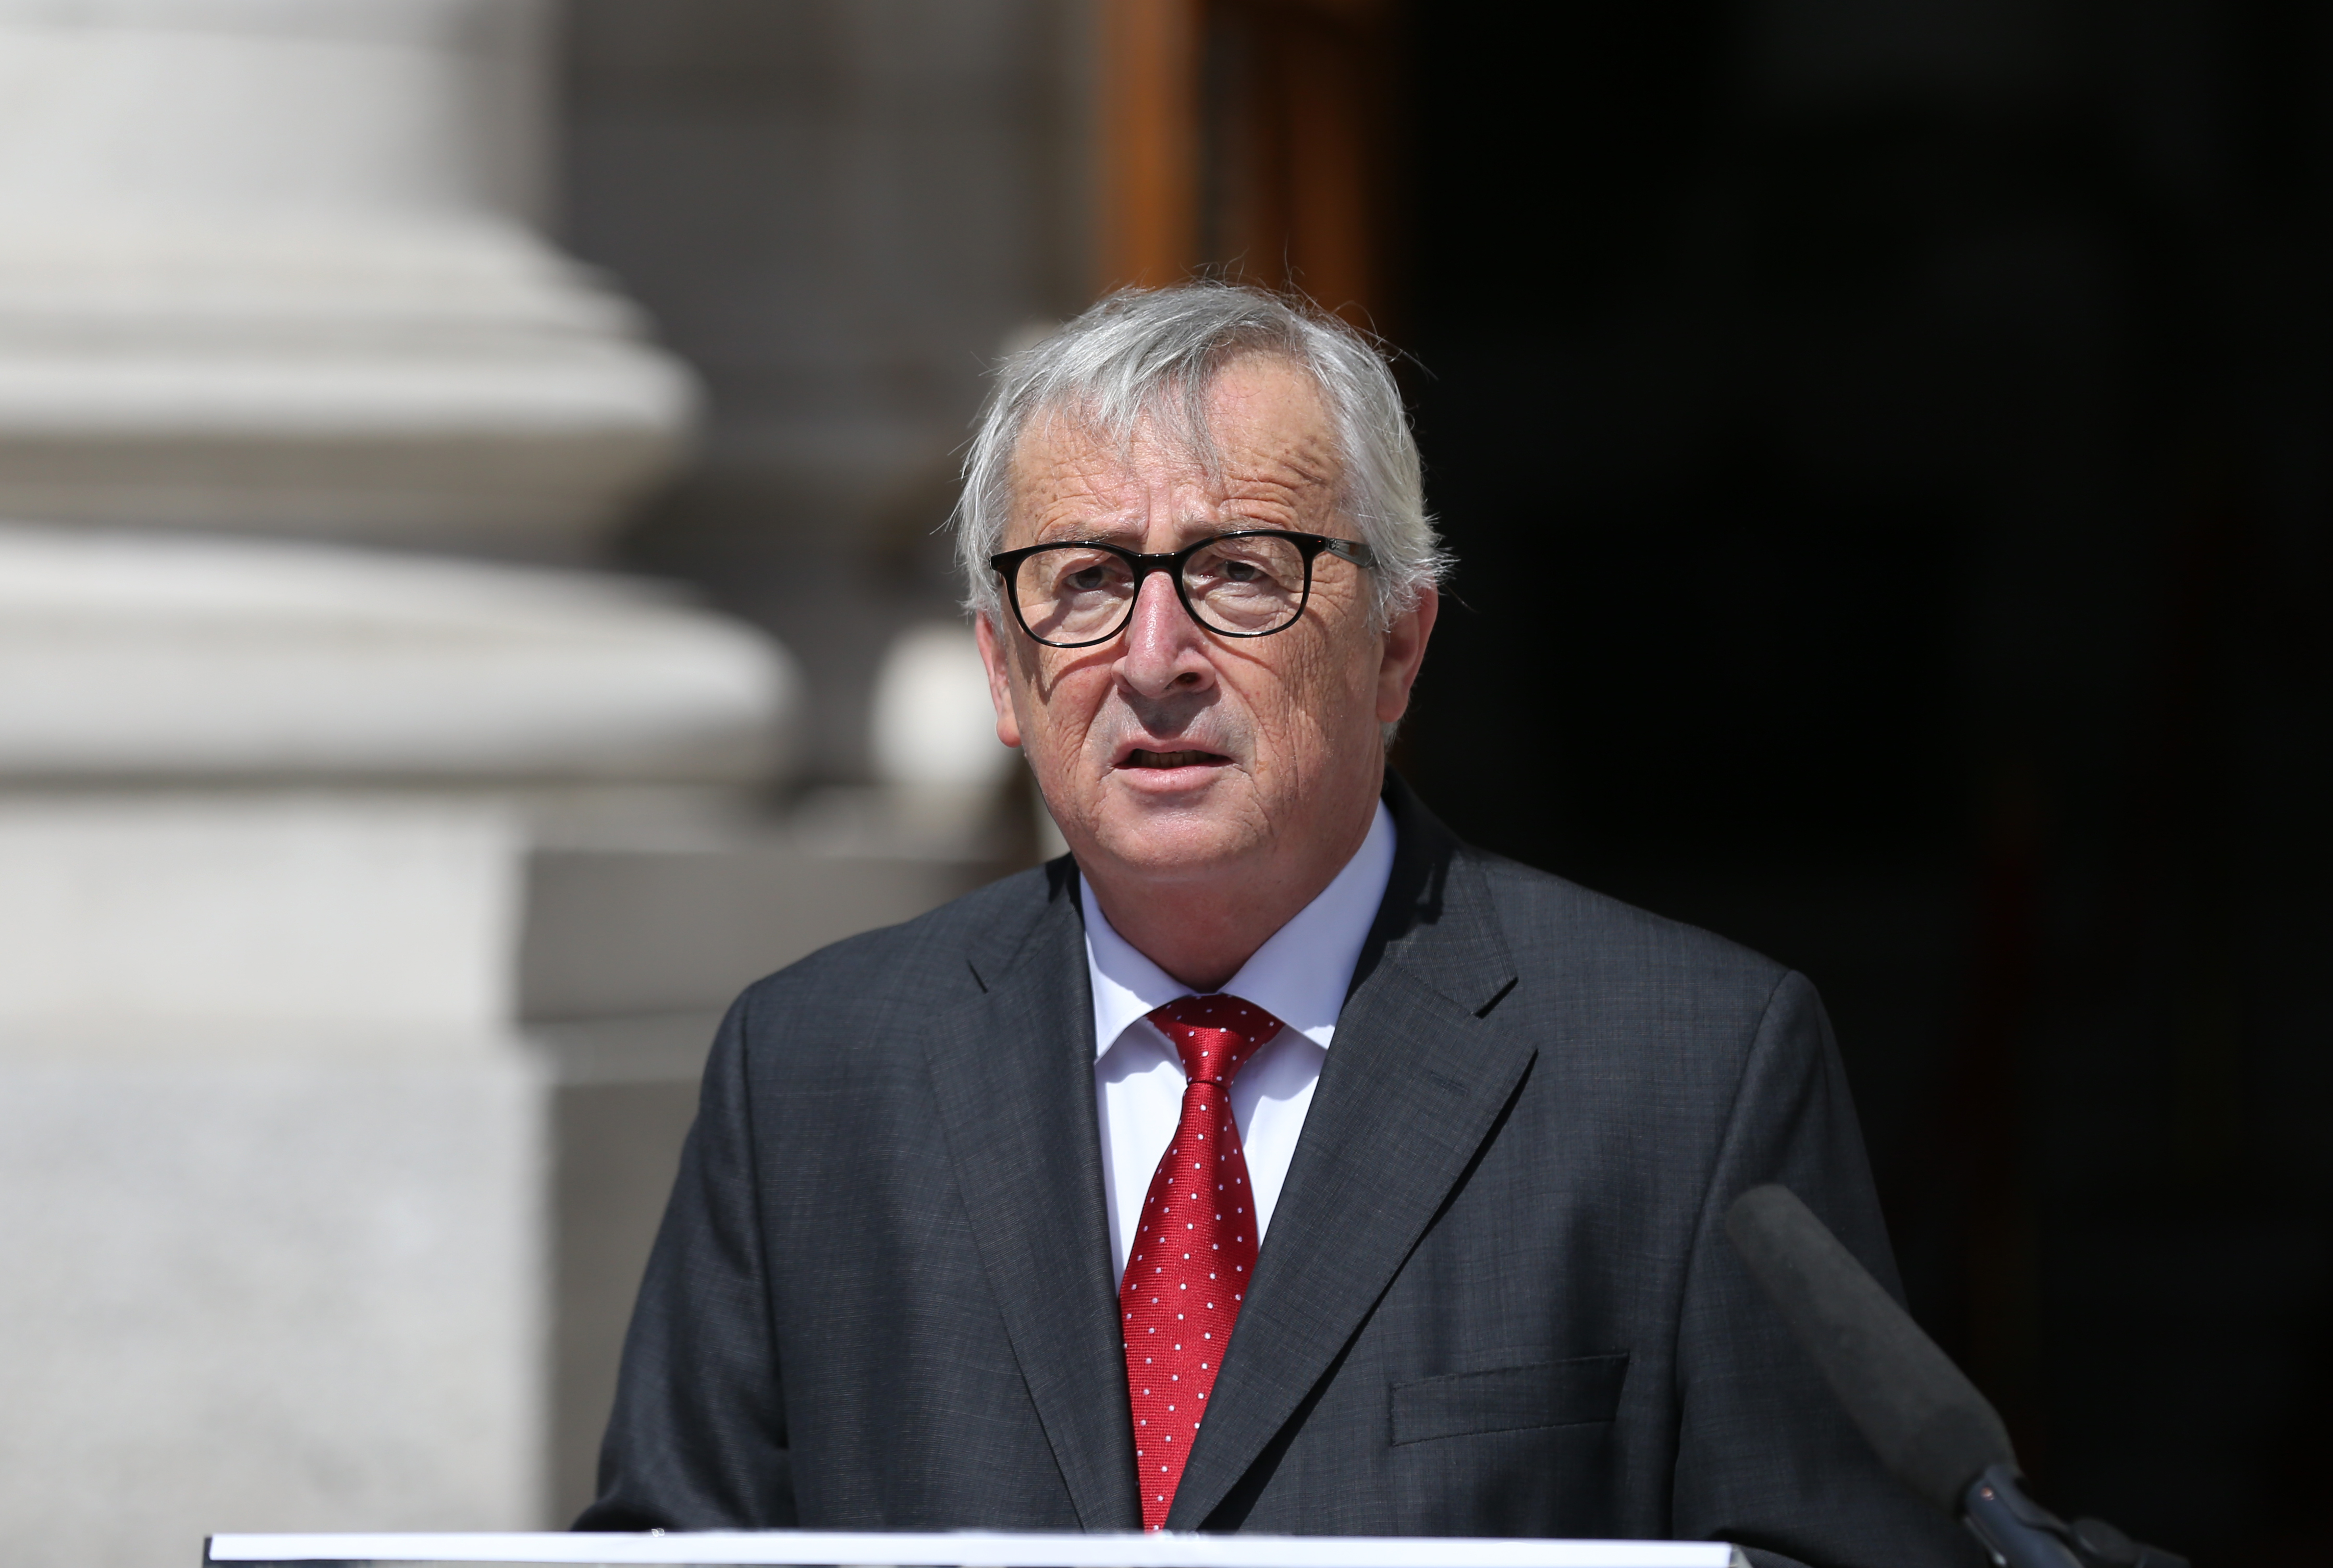 ‘Tabharfaidh an tAontas Eorpach tús áite d’Éirinn agus tá dul amú ar aon duine a cheapann go dtréigfear í’ – Juncker